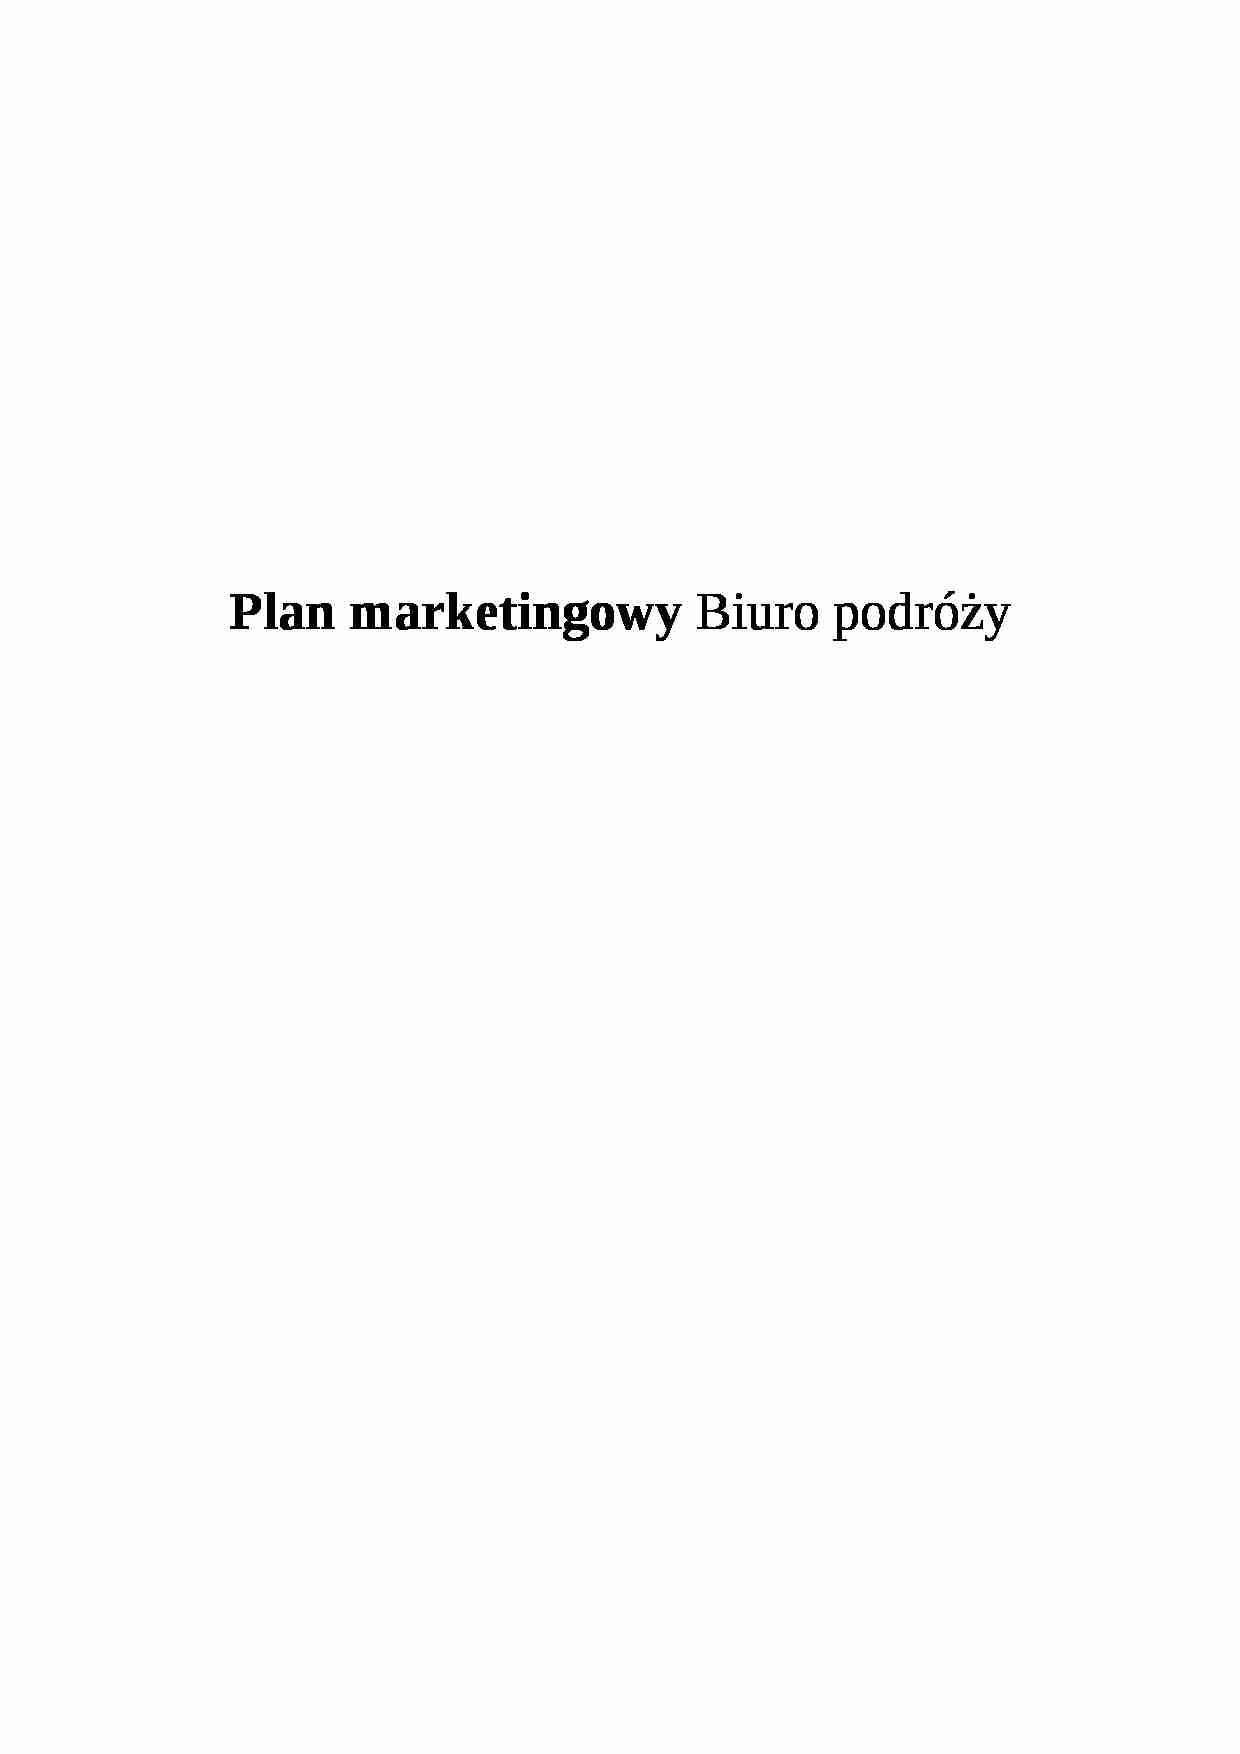 Plan marketingowy - biuro podróży - strona 1